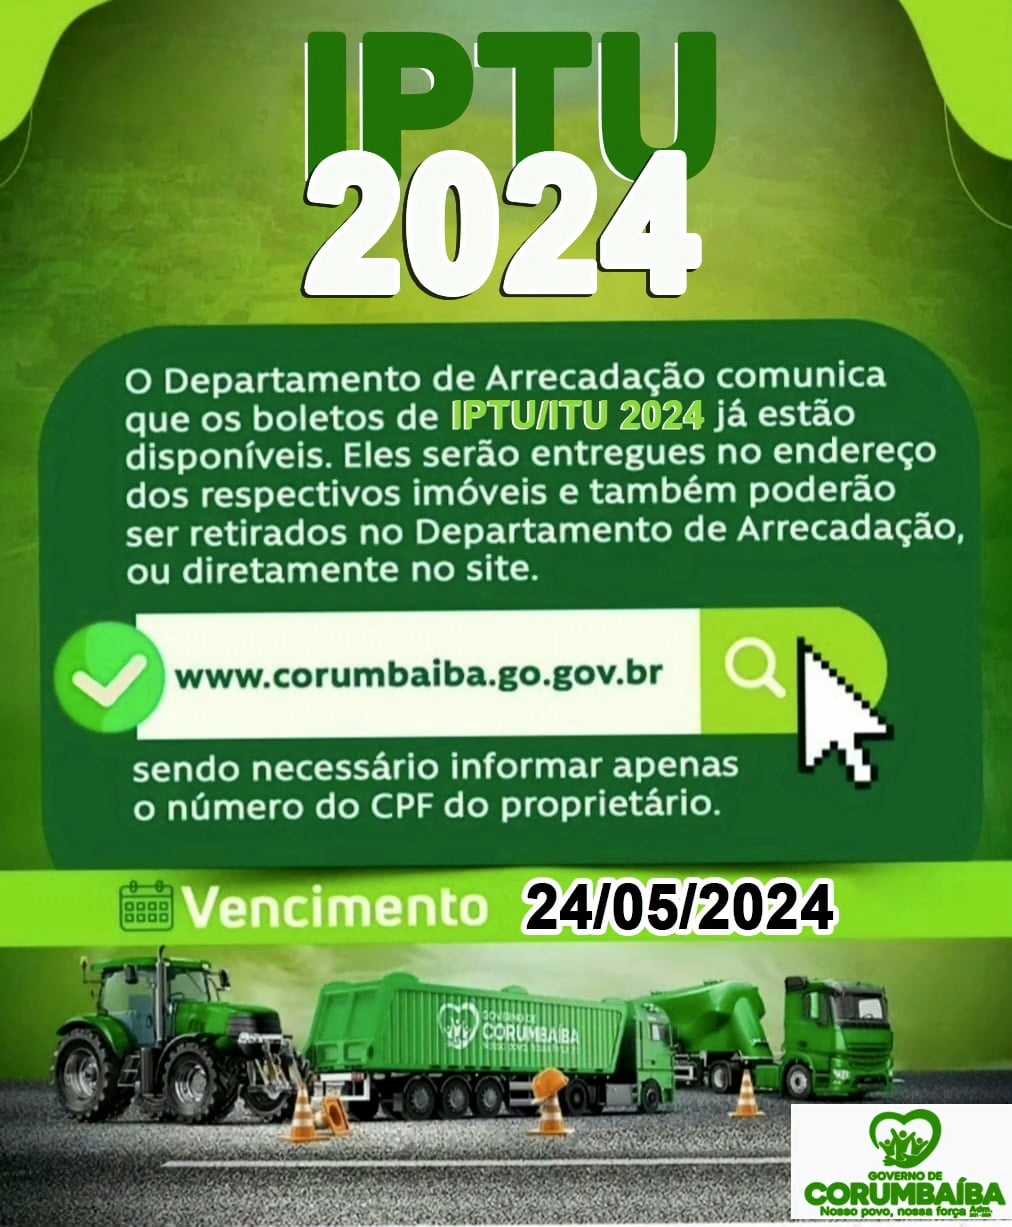 IPTU 2024 – VENCIMENTO EM 24/05/2024